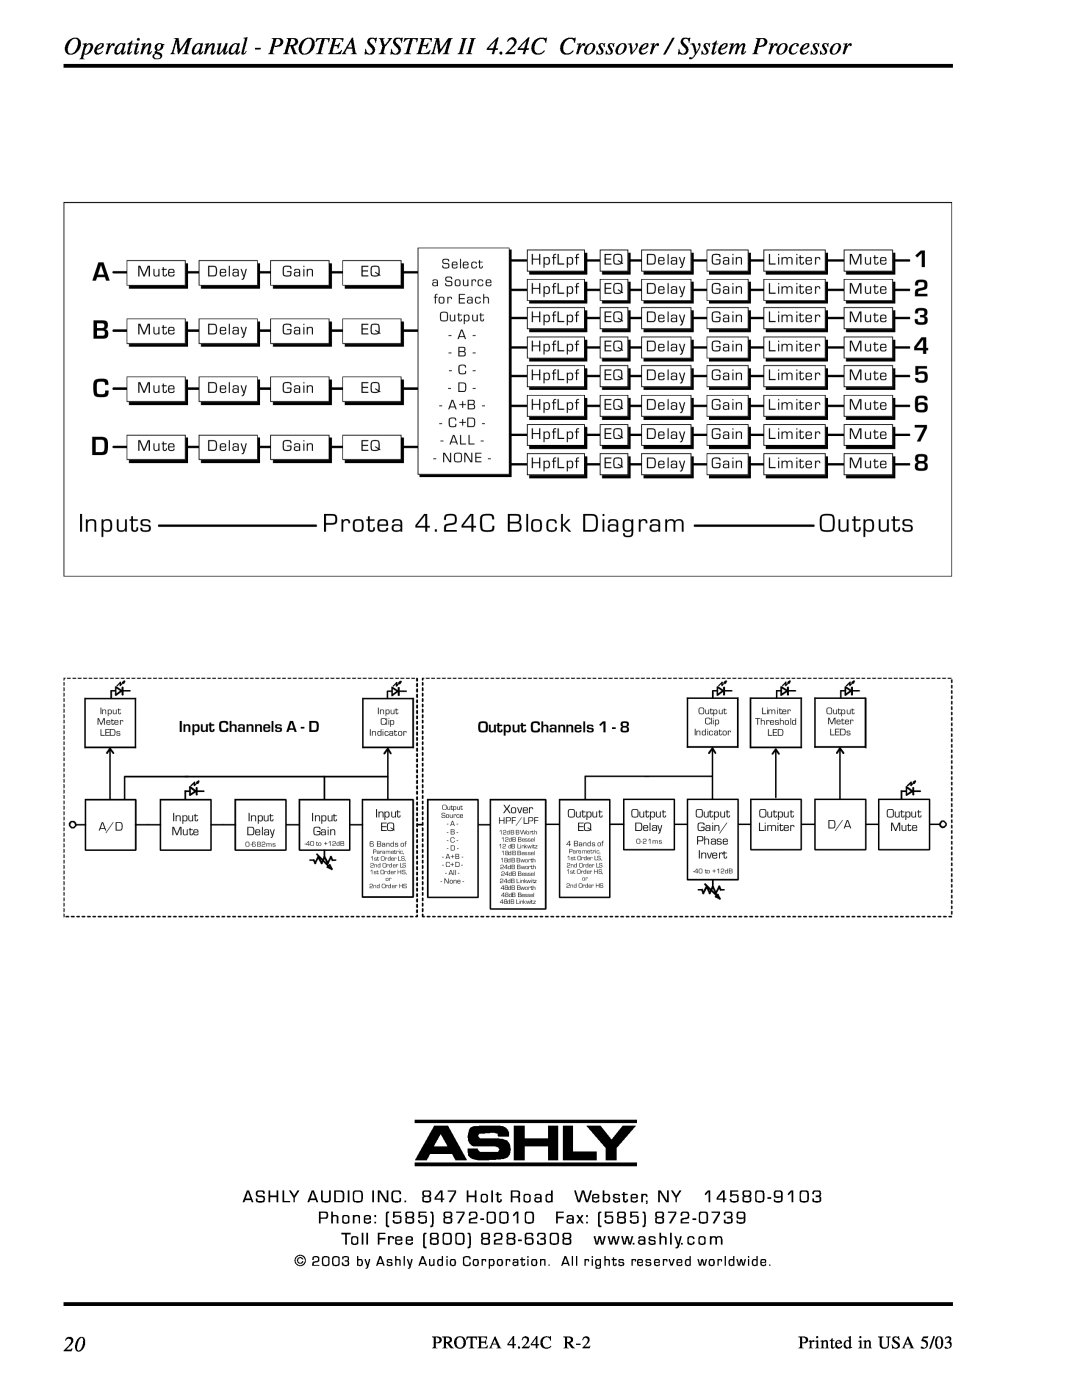 Ashly 4.24C Inputs, Protea 4. 24C Block Diagram, Outputs, 1 2 3, A / D, A S H LY AUDIO INC . 847 Holt Road, Webster, NY 